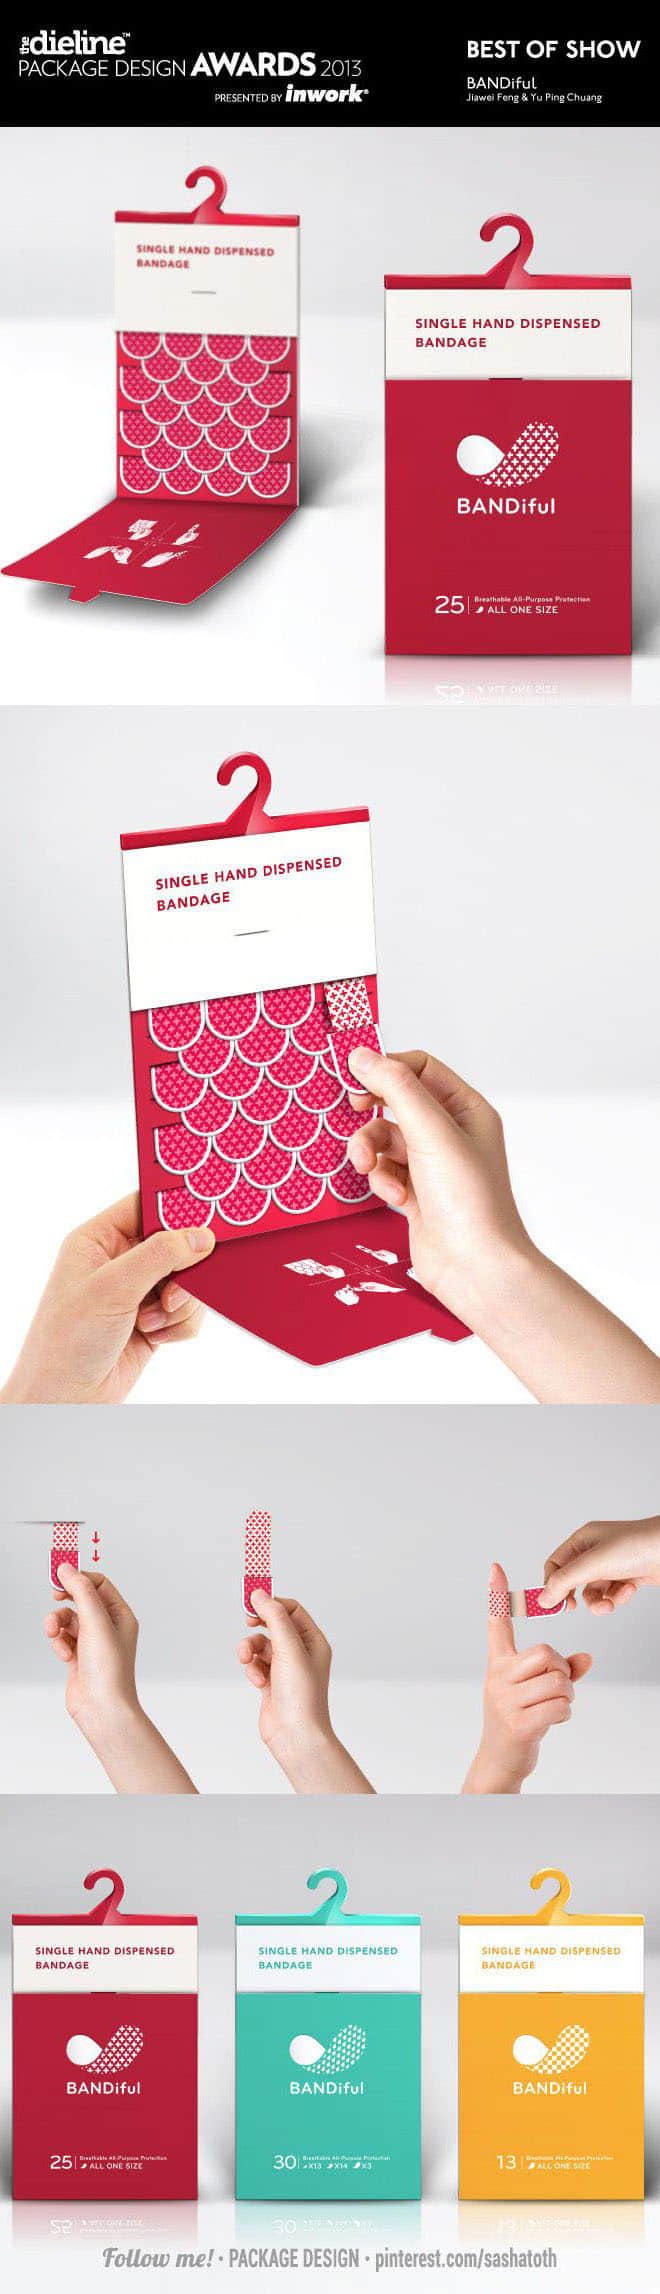 25-bandage-brilliant-packaging-design